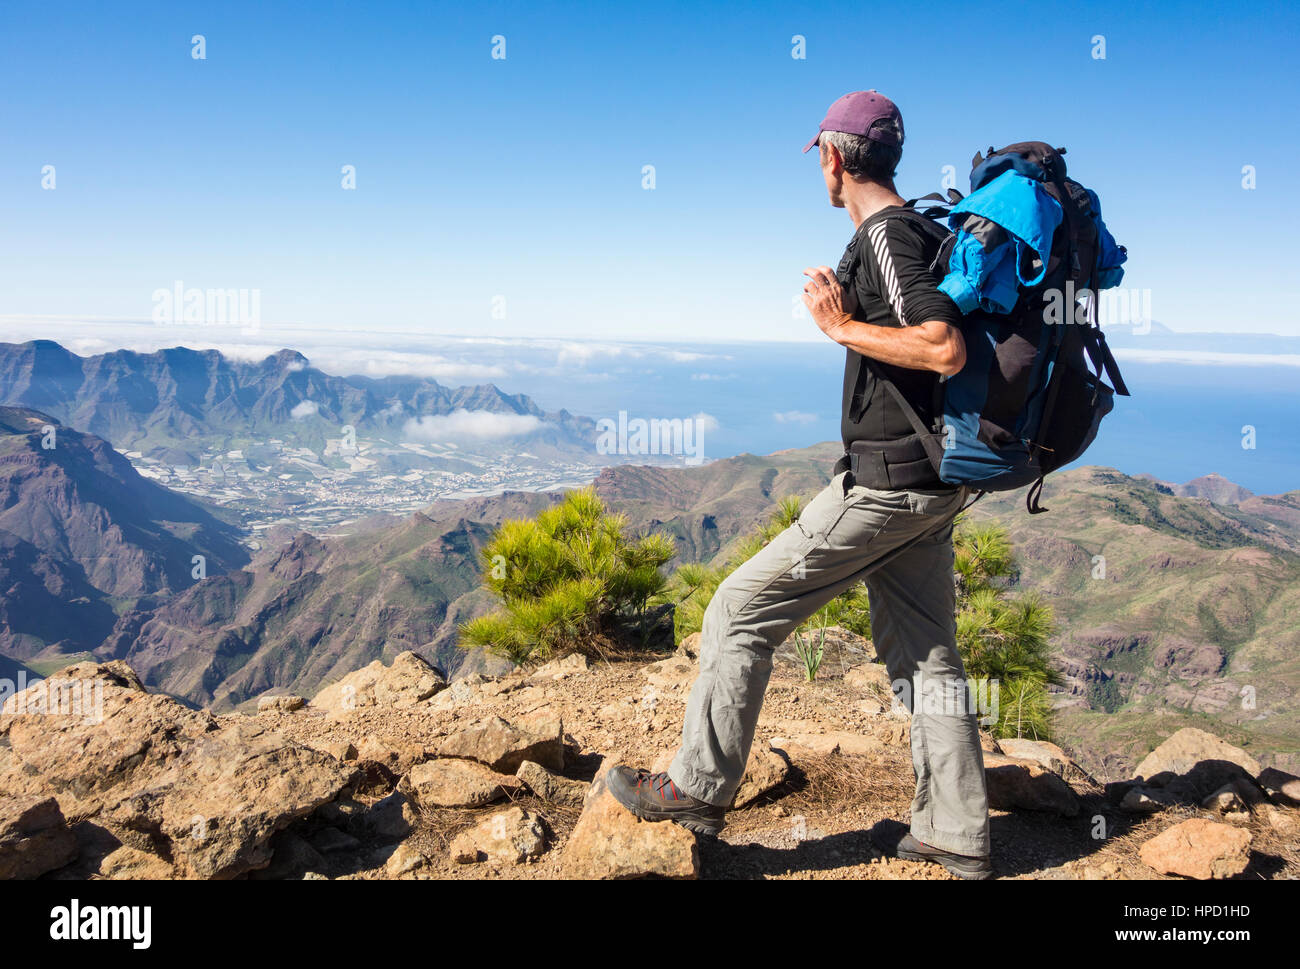 Ältere männliche Wanderer auf Alta Vista Berg auf Gran Canaria mit La Aldea de San Nicolas Dorf in Ferne. Kanarischen Inseln. Spanien Stockfoto